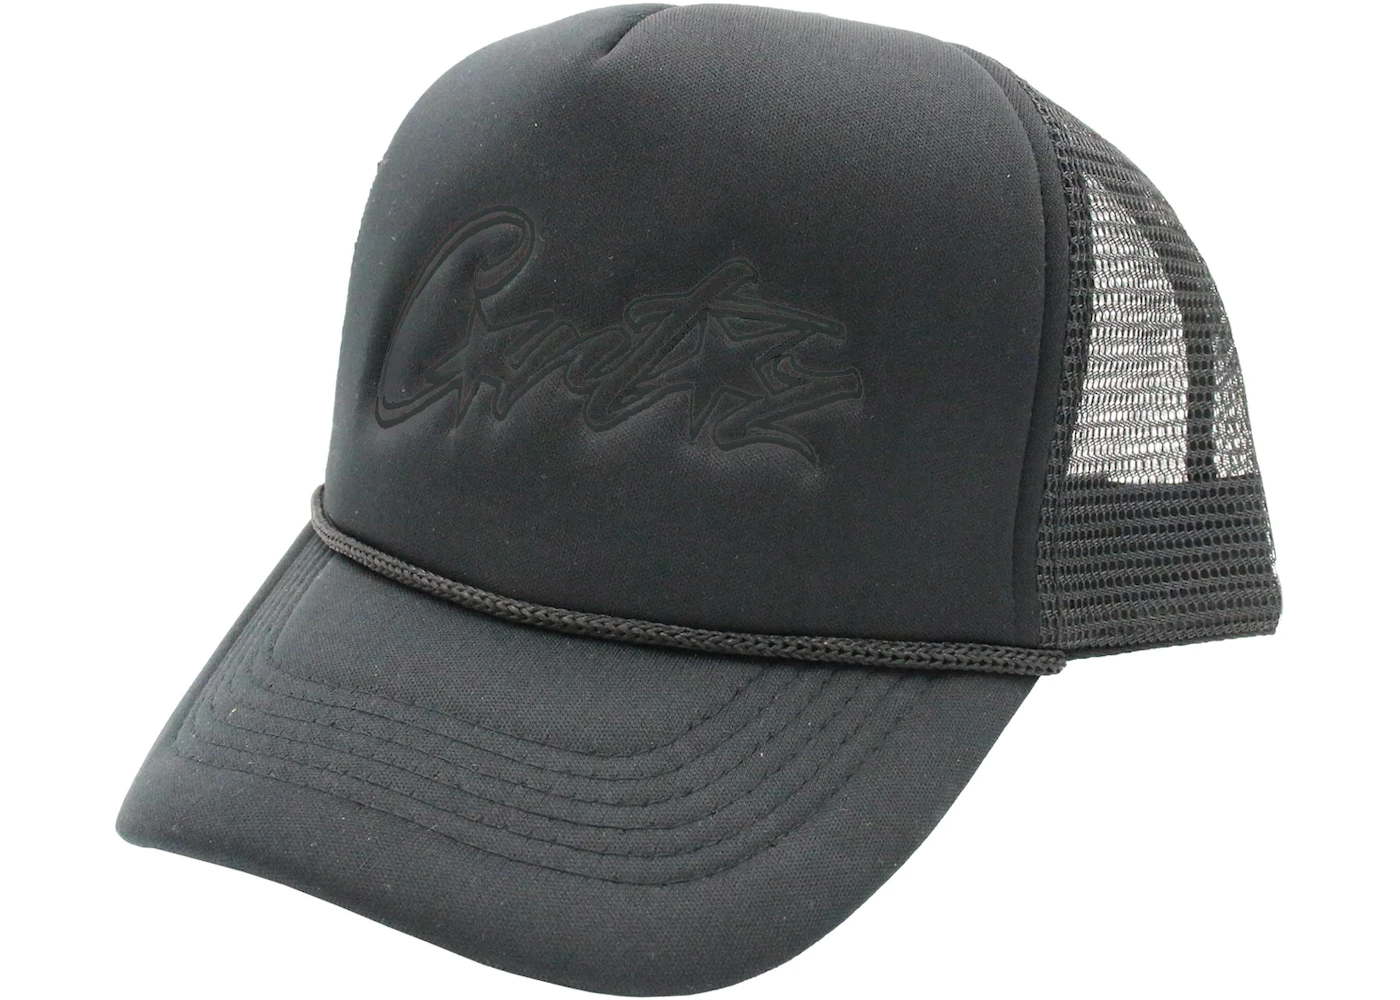 Hat Black - Allstarz Corteiz Trucker US